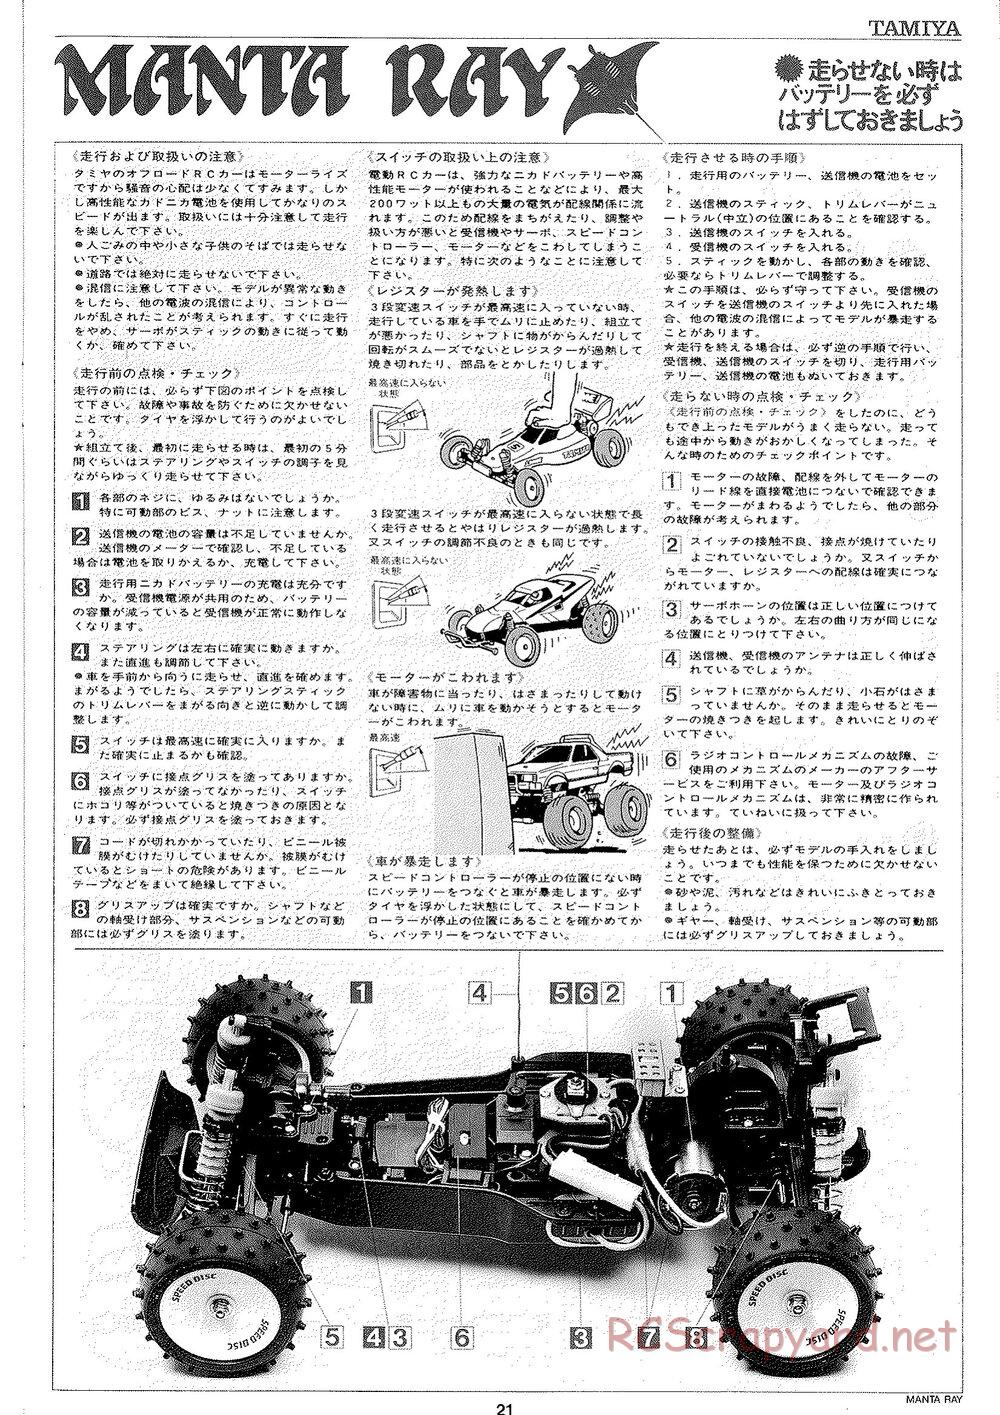 Tamiya - Manta Ray 2005 - DF-01 Chassis - Manual - Page 22